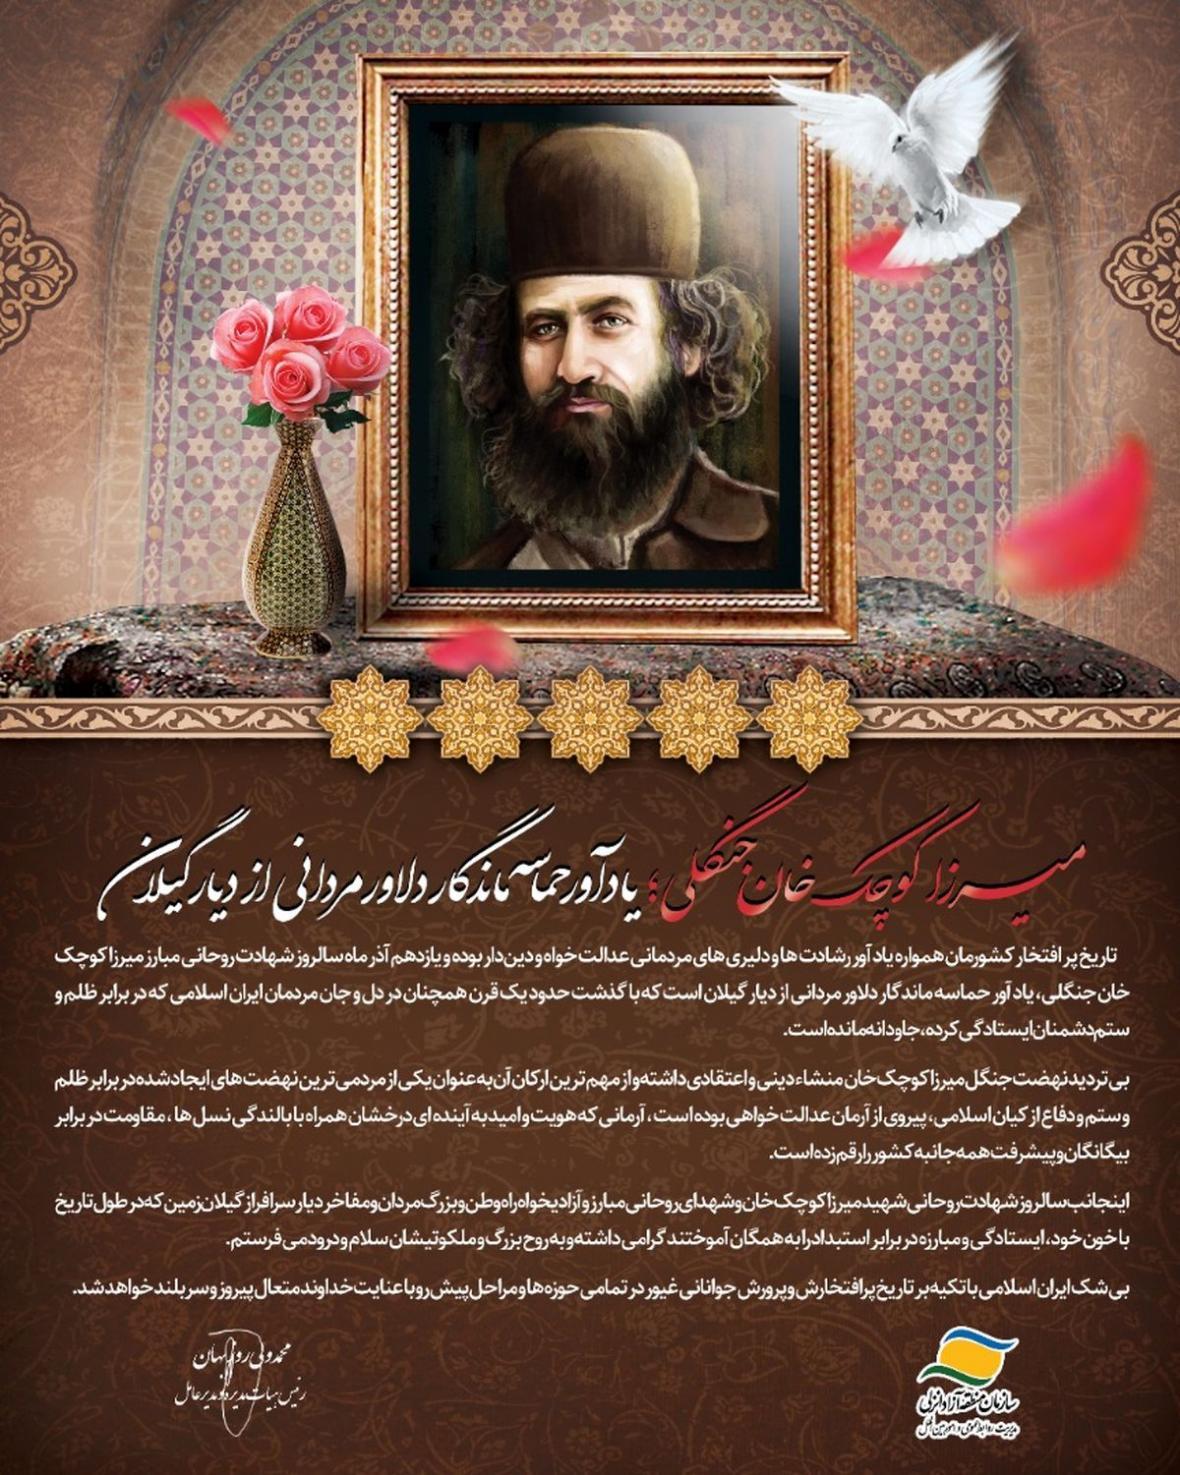 پیغام مدیرعامل سازمان منطقه آزاد انزلی به مناسبت سالروز شهادت میرزا کوچک خان جنگلی